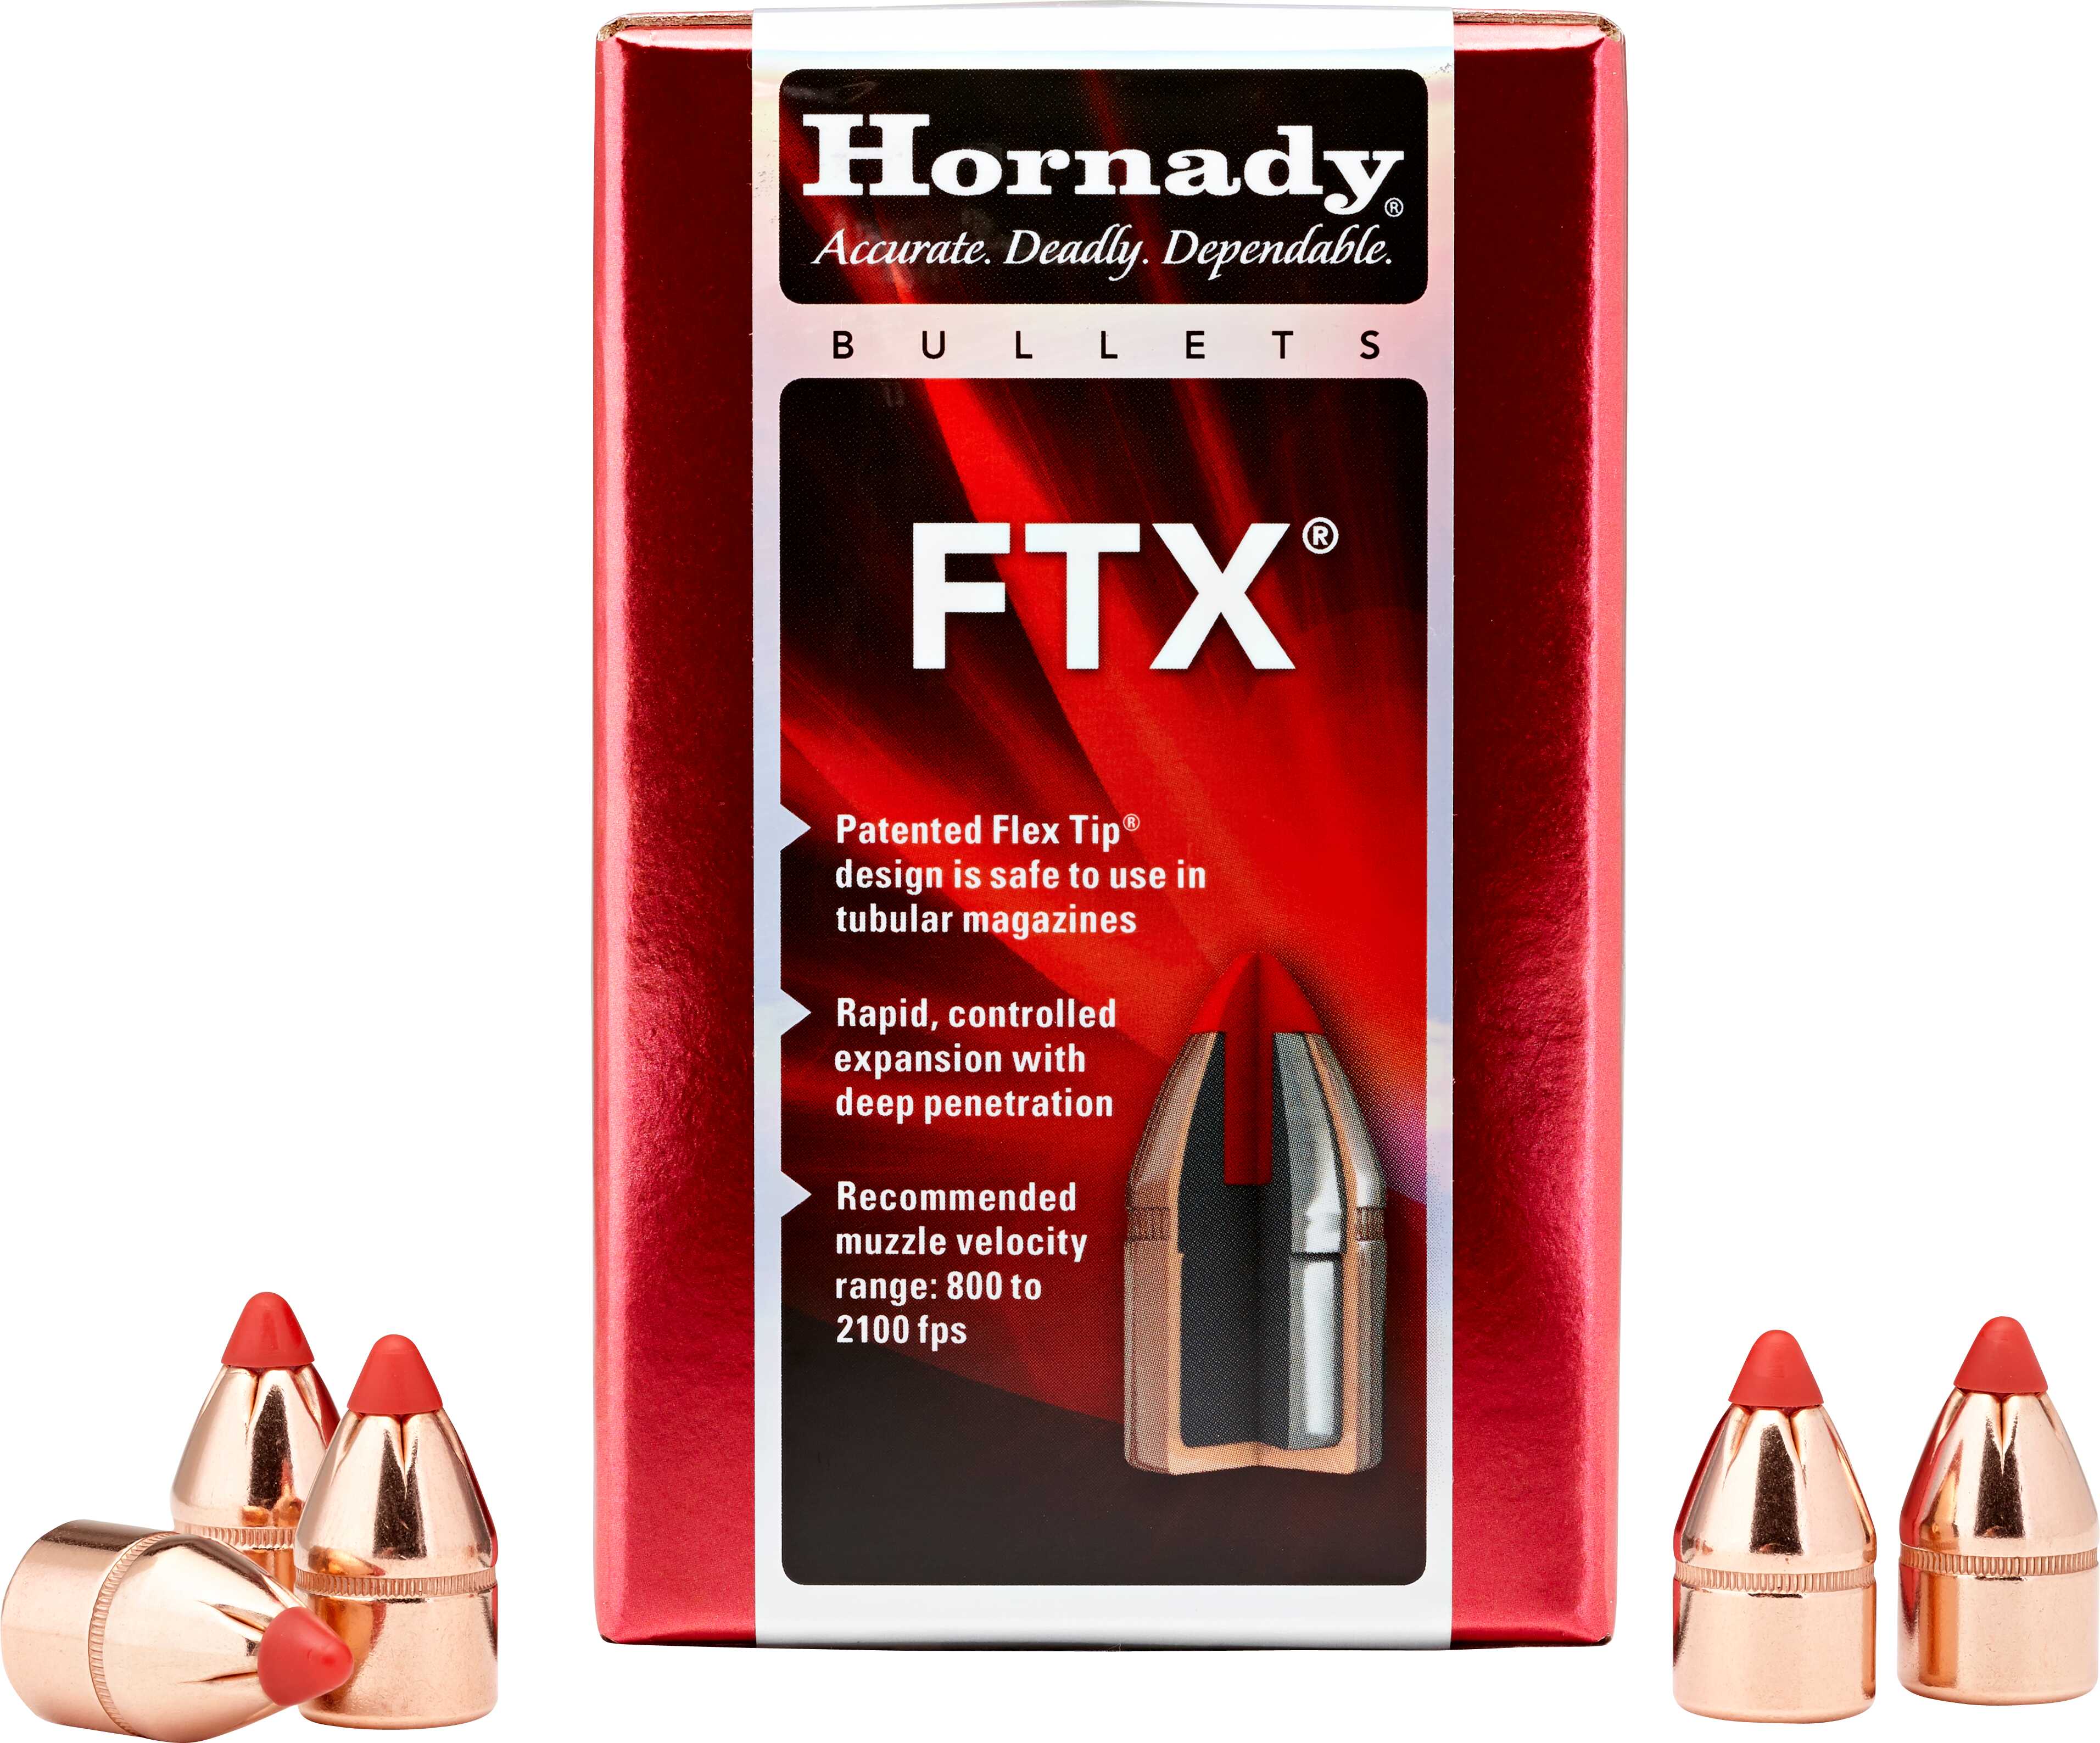 Hornady Bullets 44 Caliber 225G Ftx 100Bx